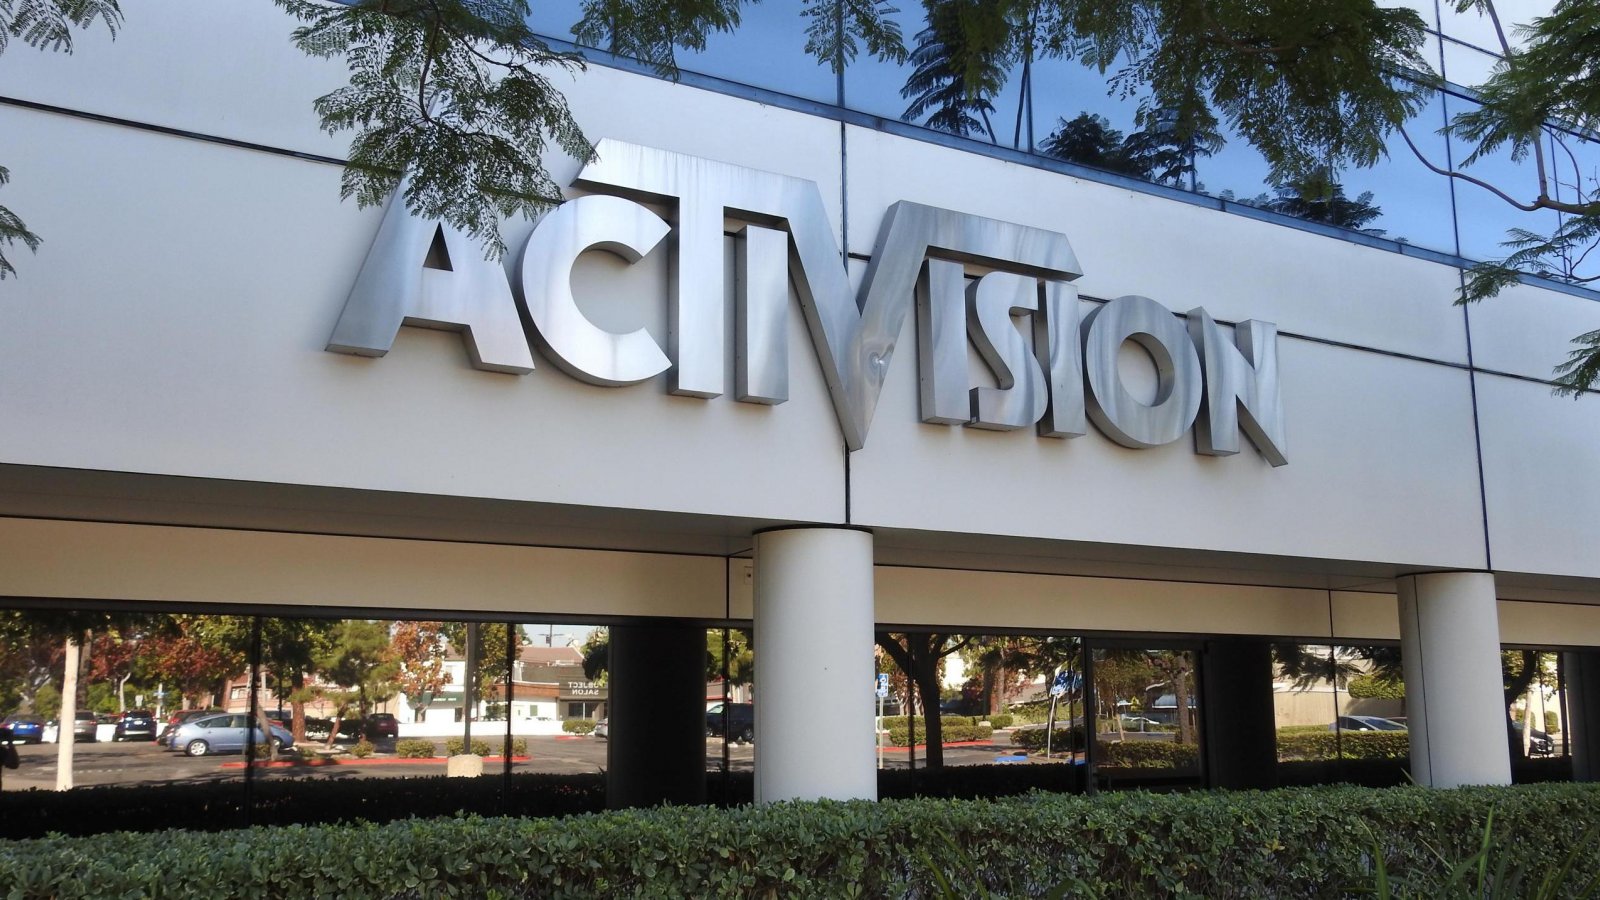 Microsoft e Activision: la risposta della CMA sull'acquisizione è attesa questa settimana